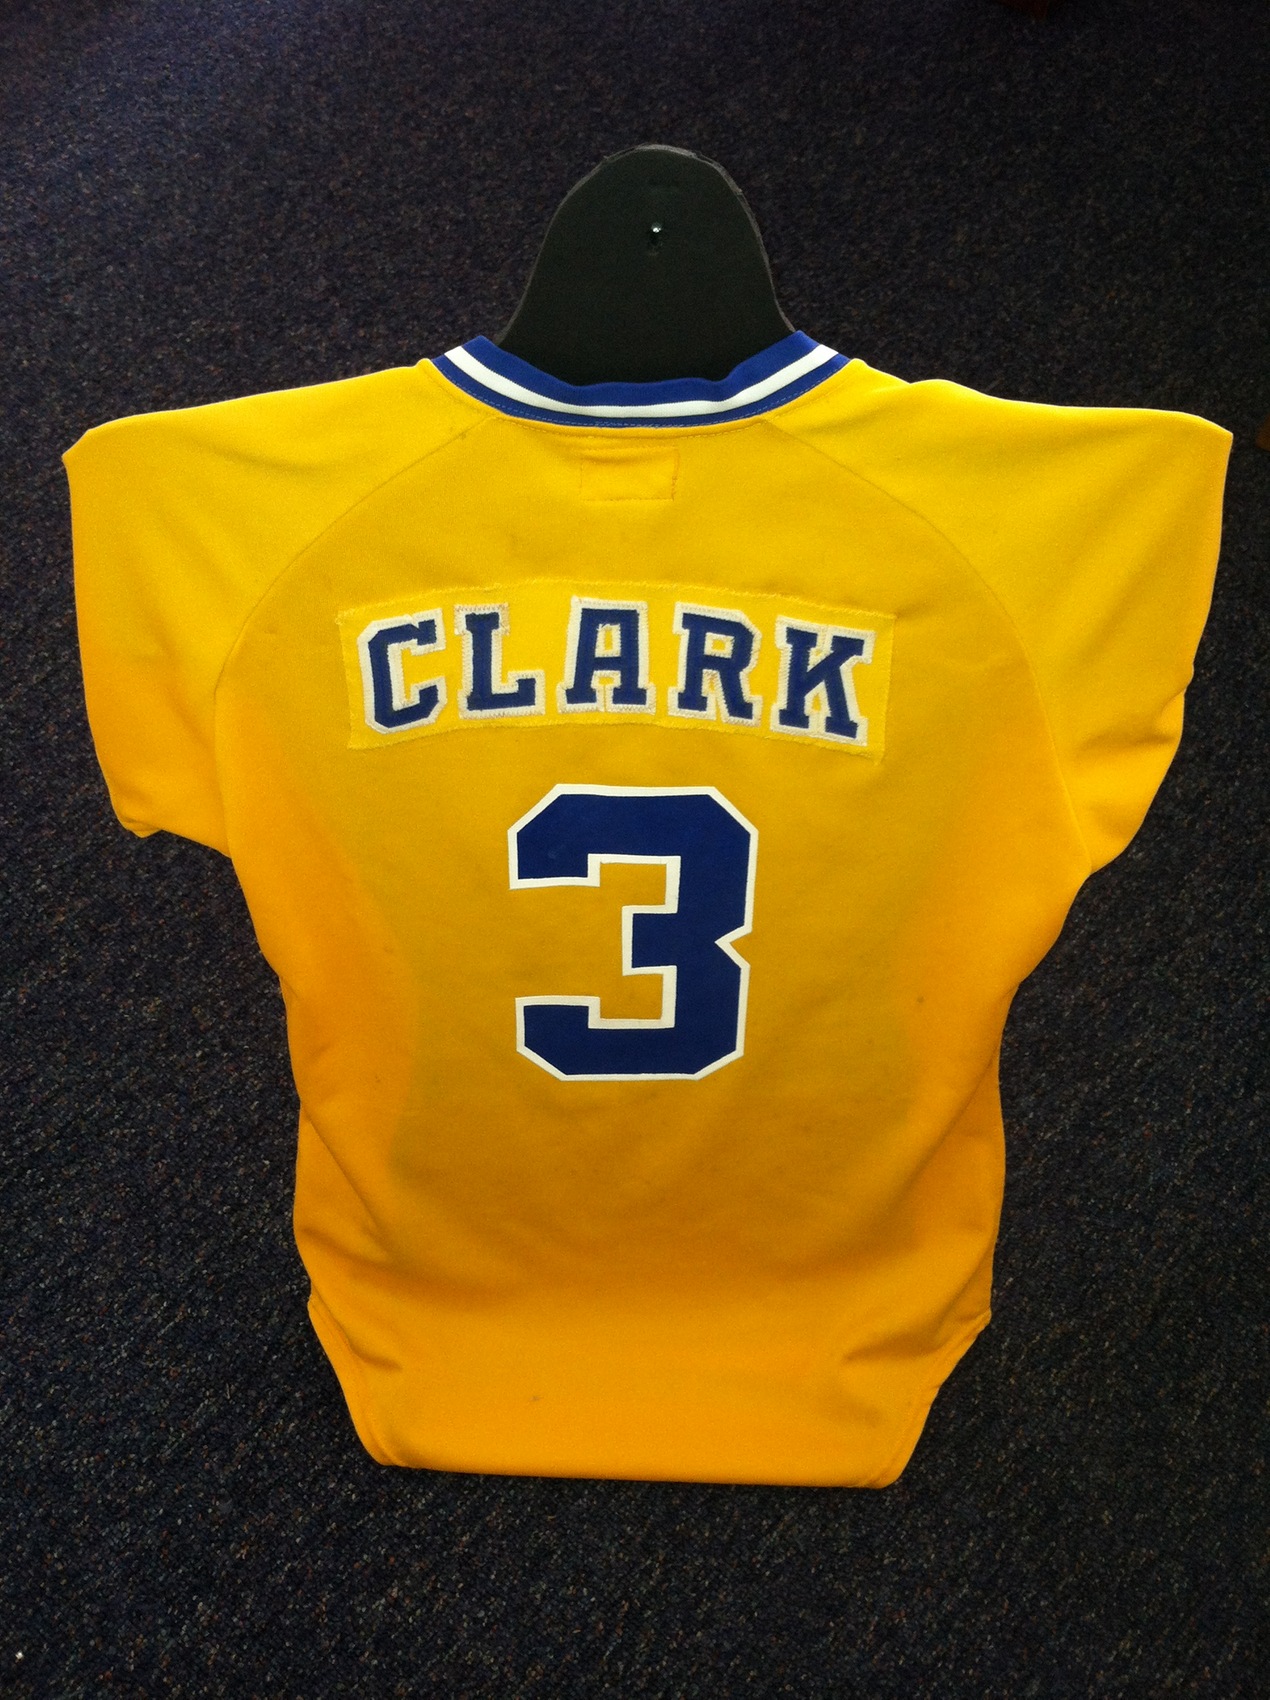 Baseball's Clark To Retire